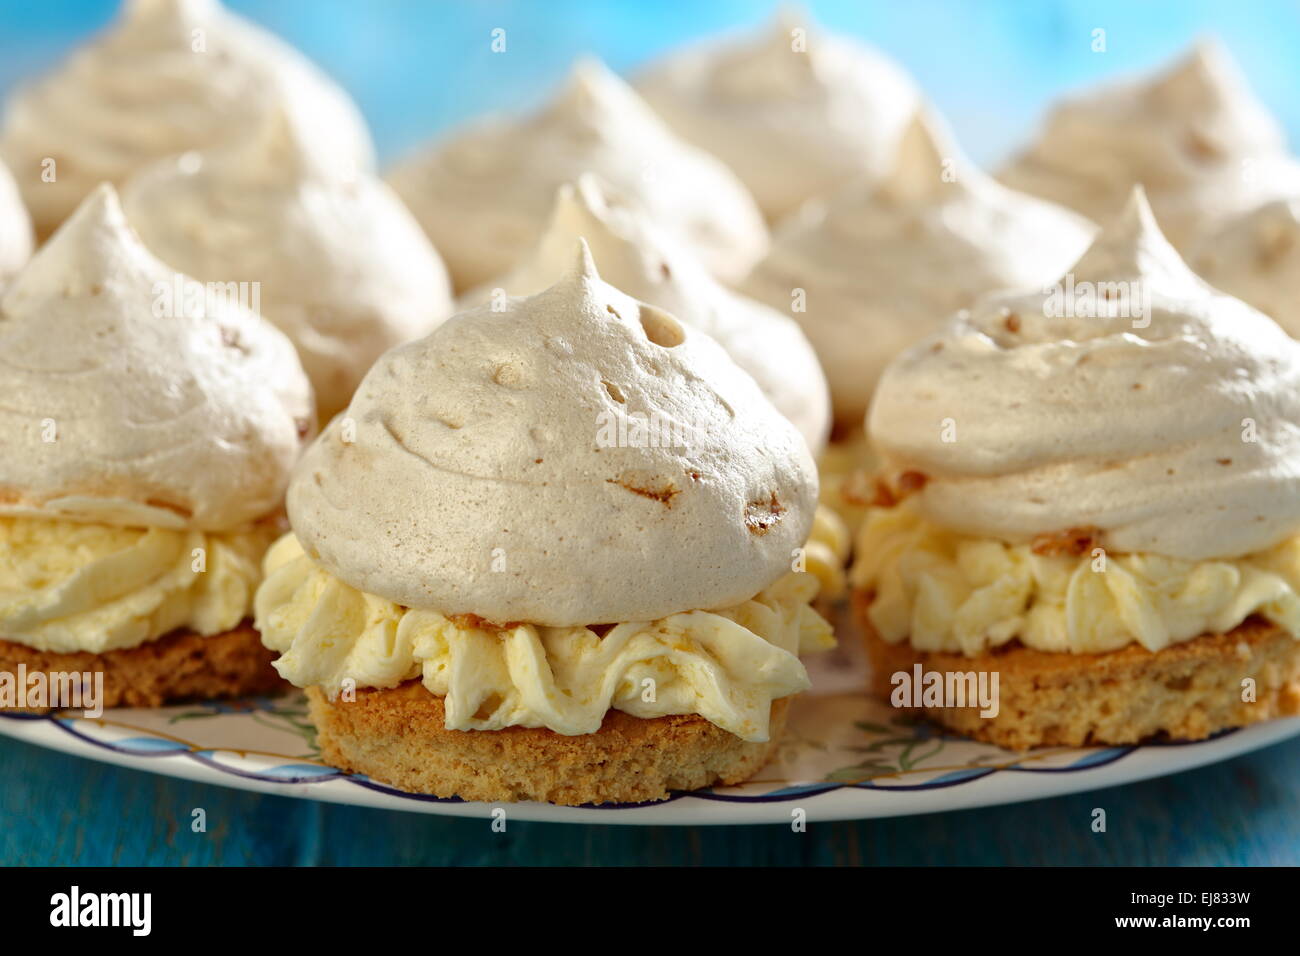 Meringue cakes with cream. Stock Photo